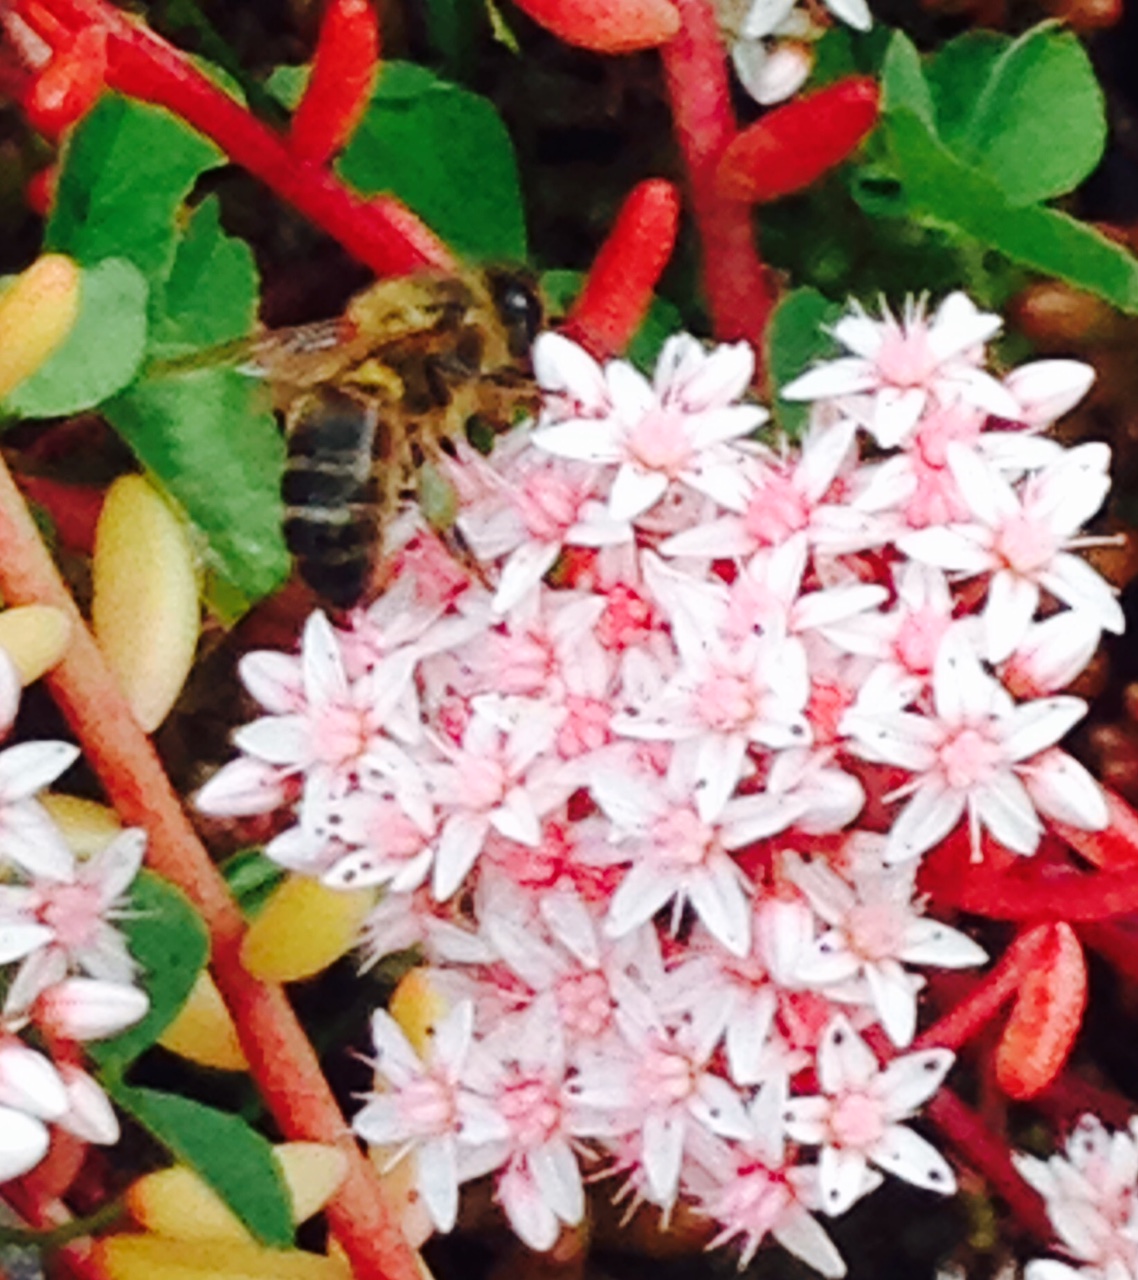 Honey Bee with half full pollen baskets